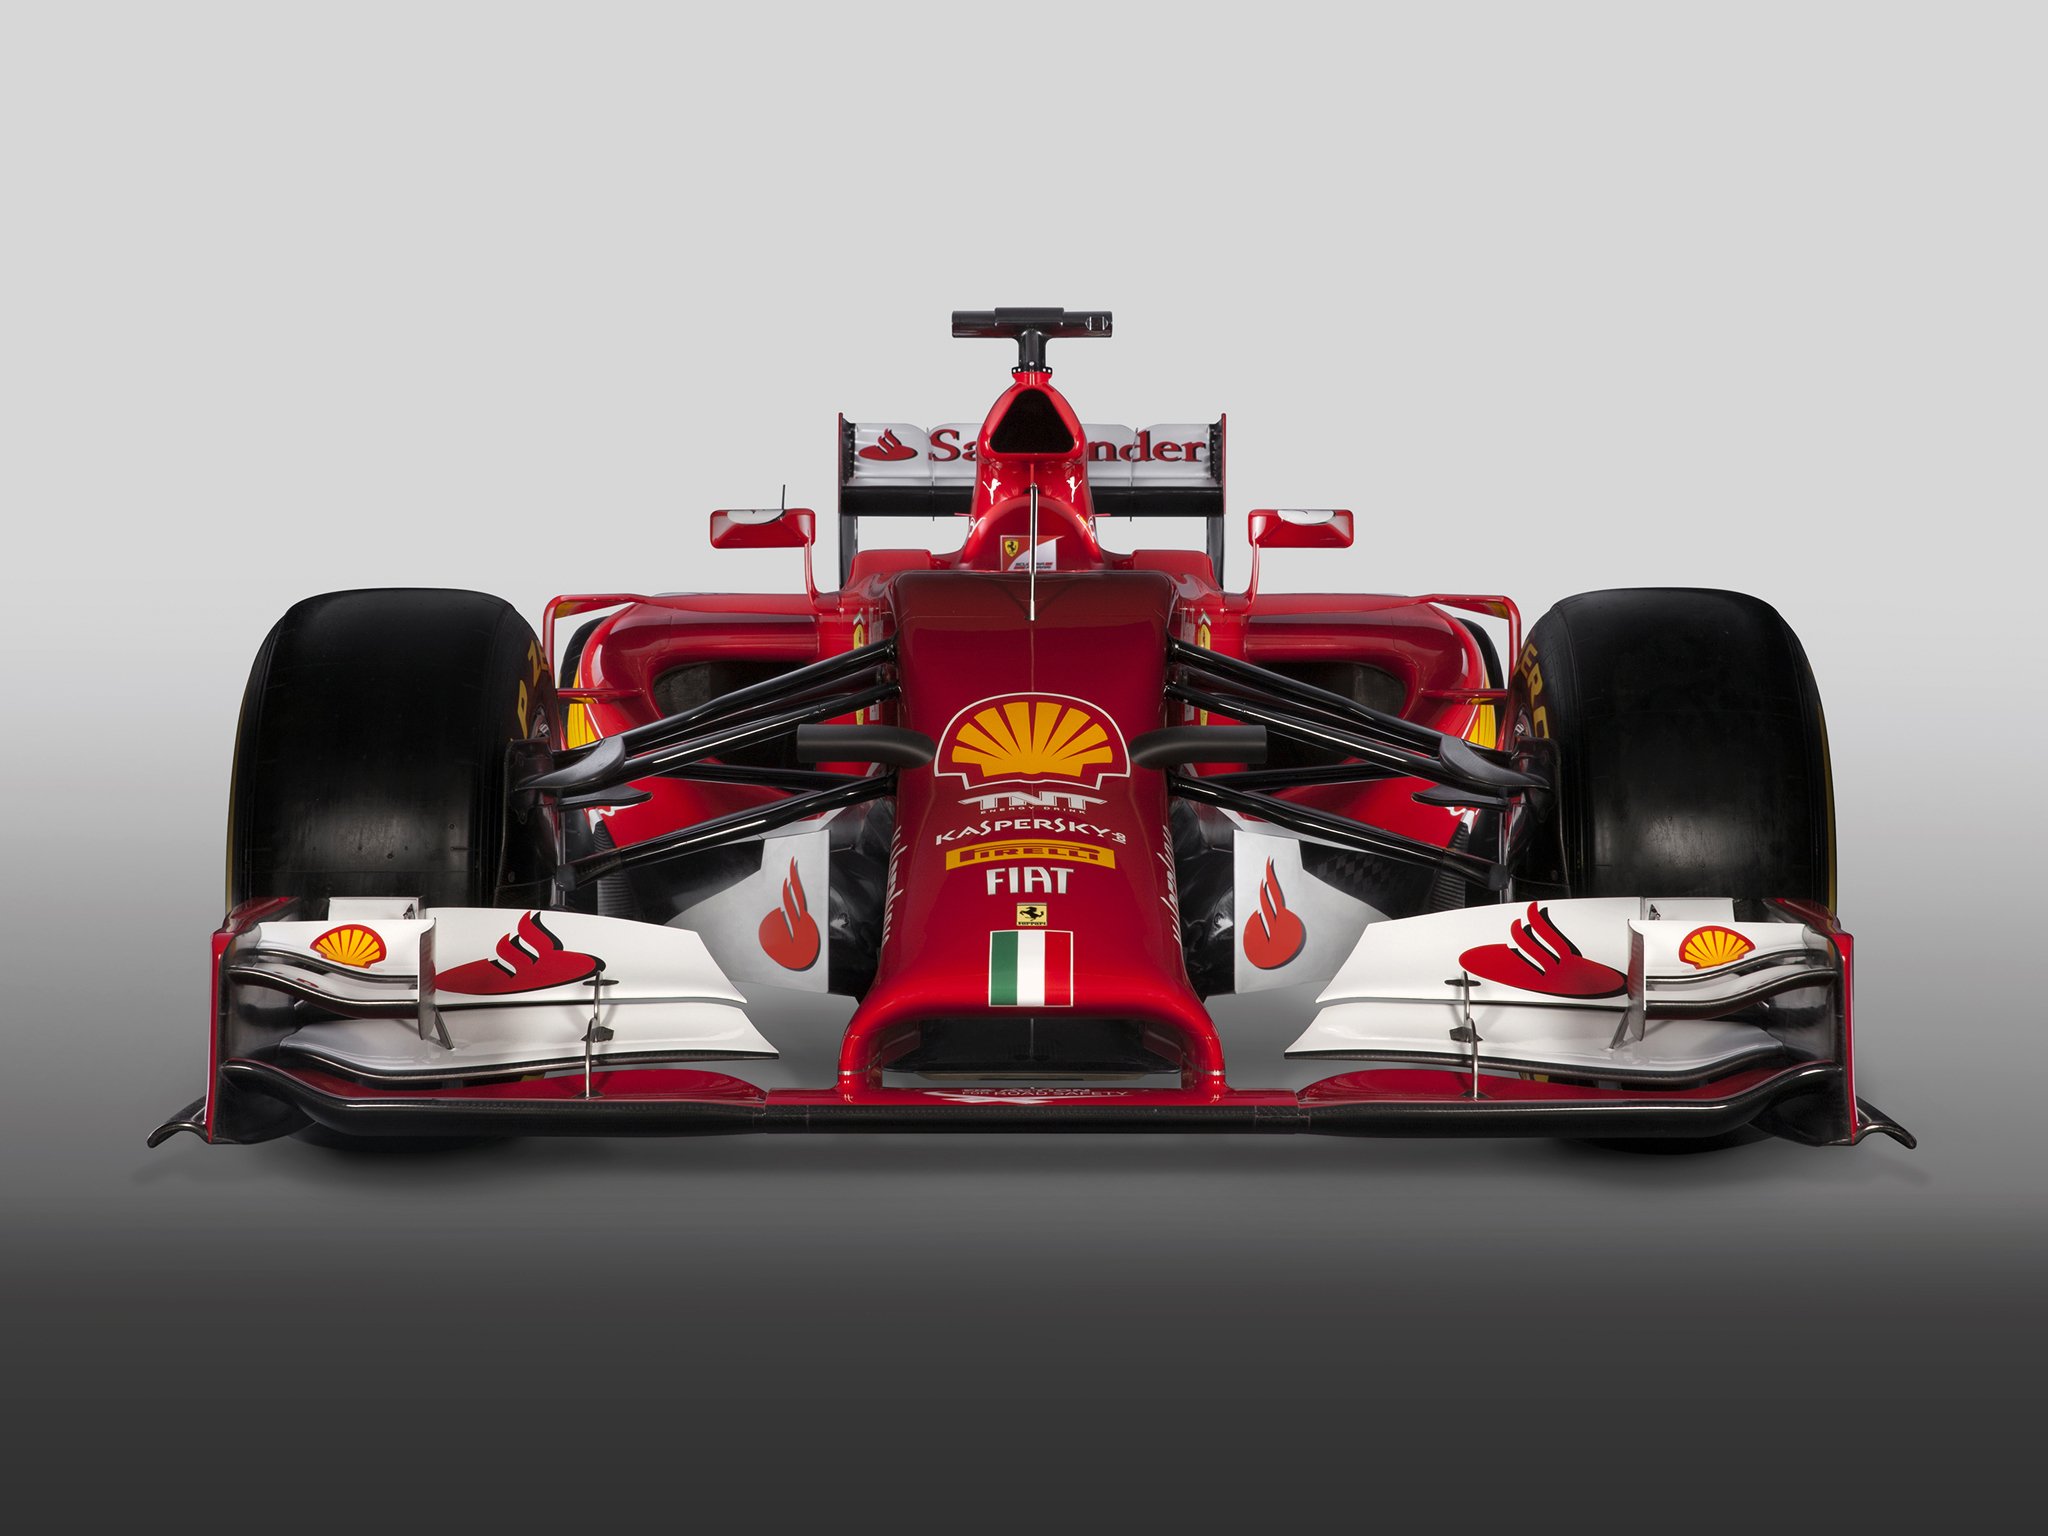 Formel 1 a - Formel 1 bilder